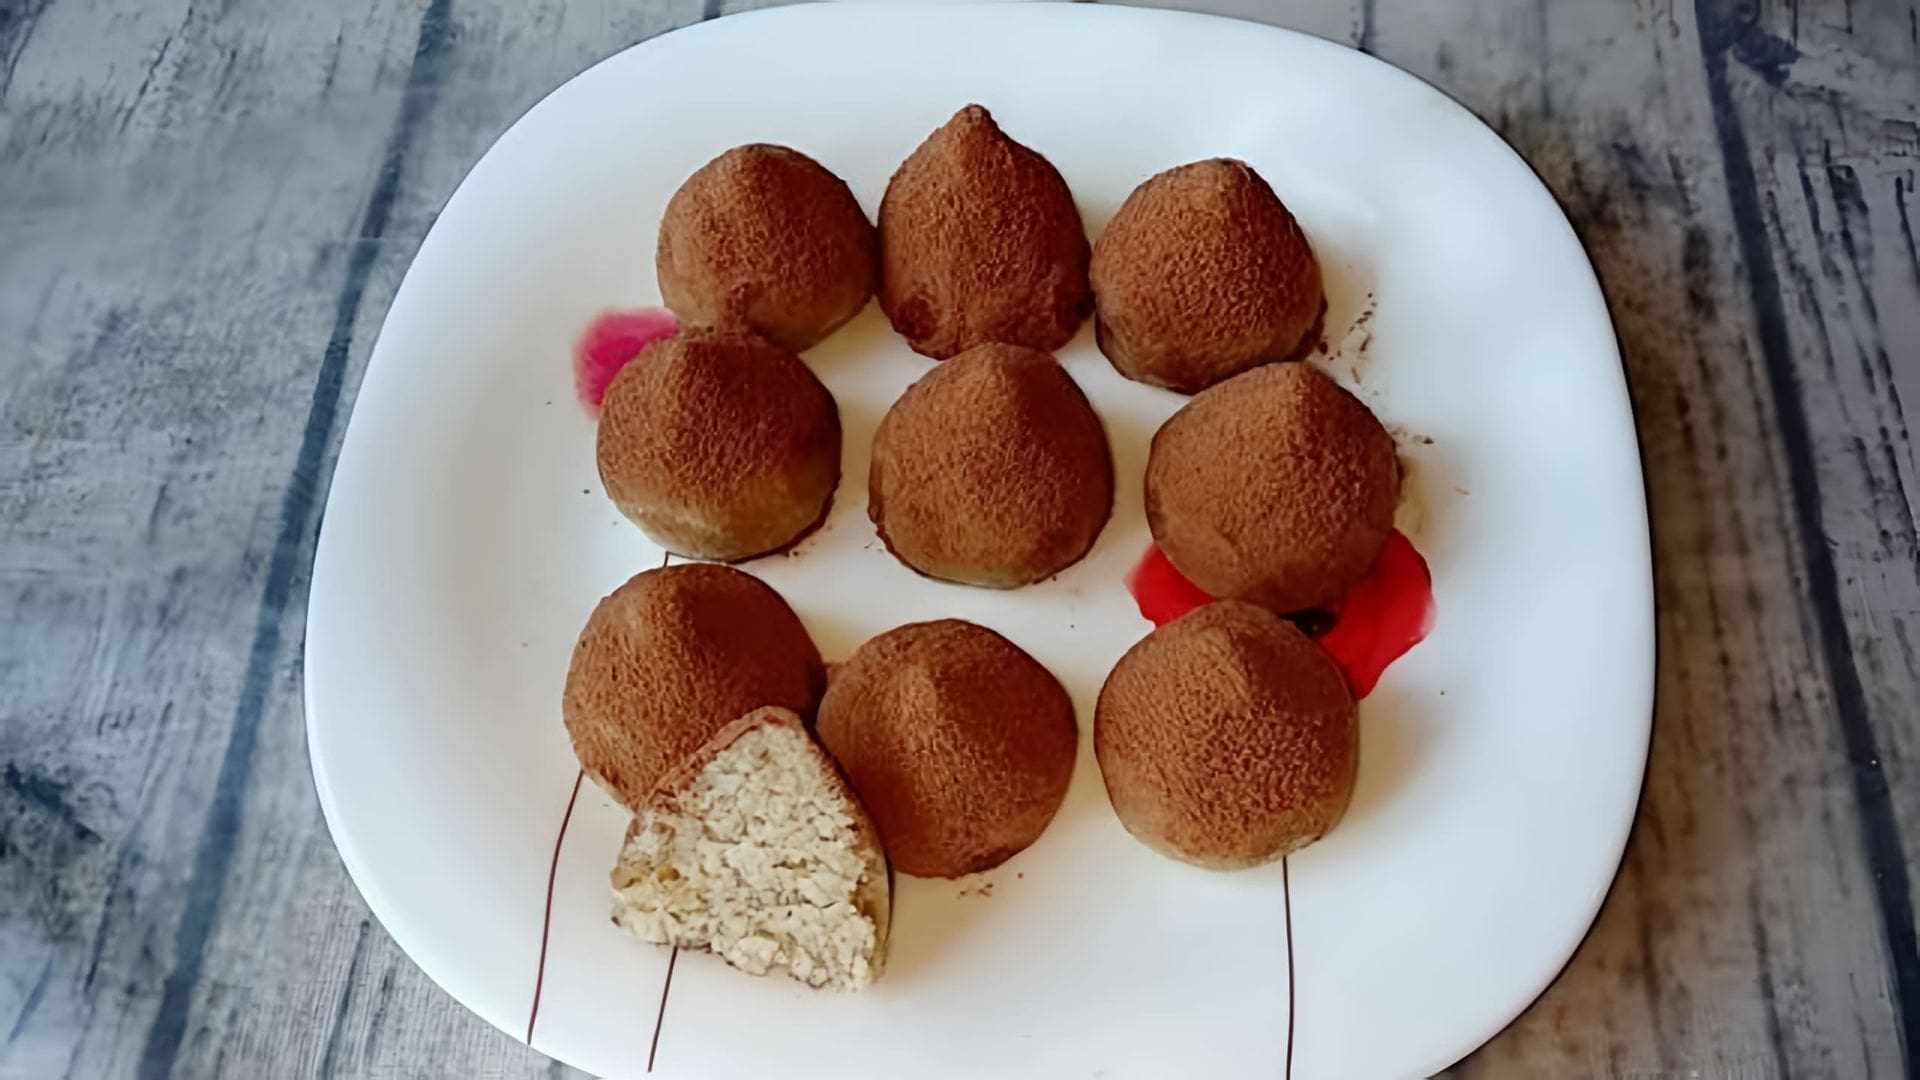 В этом видео демонстрируется рецепт приготовления трюфелей из кокосовой муки без выпечки и глютена